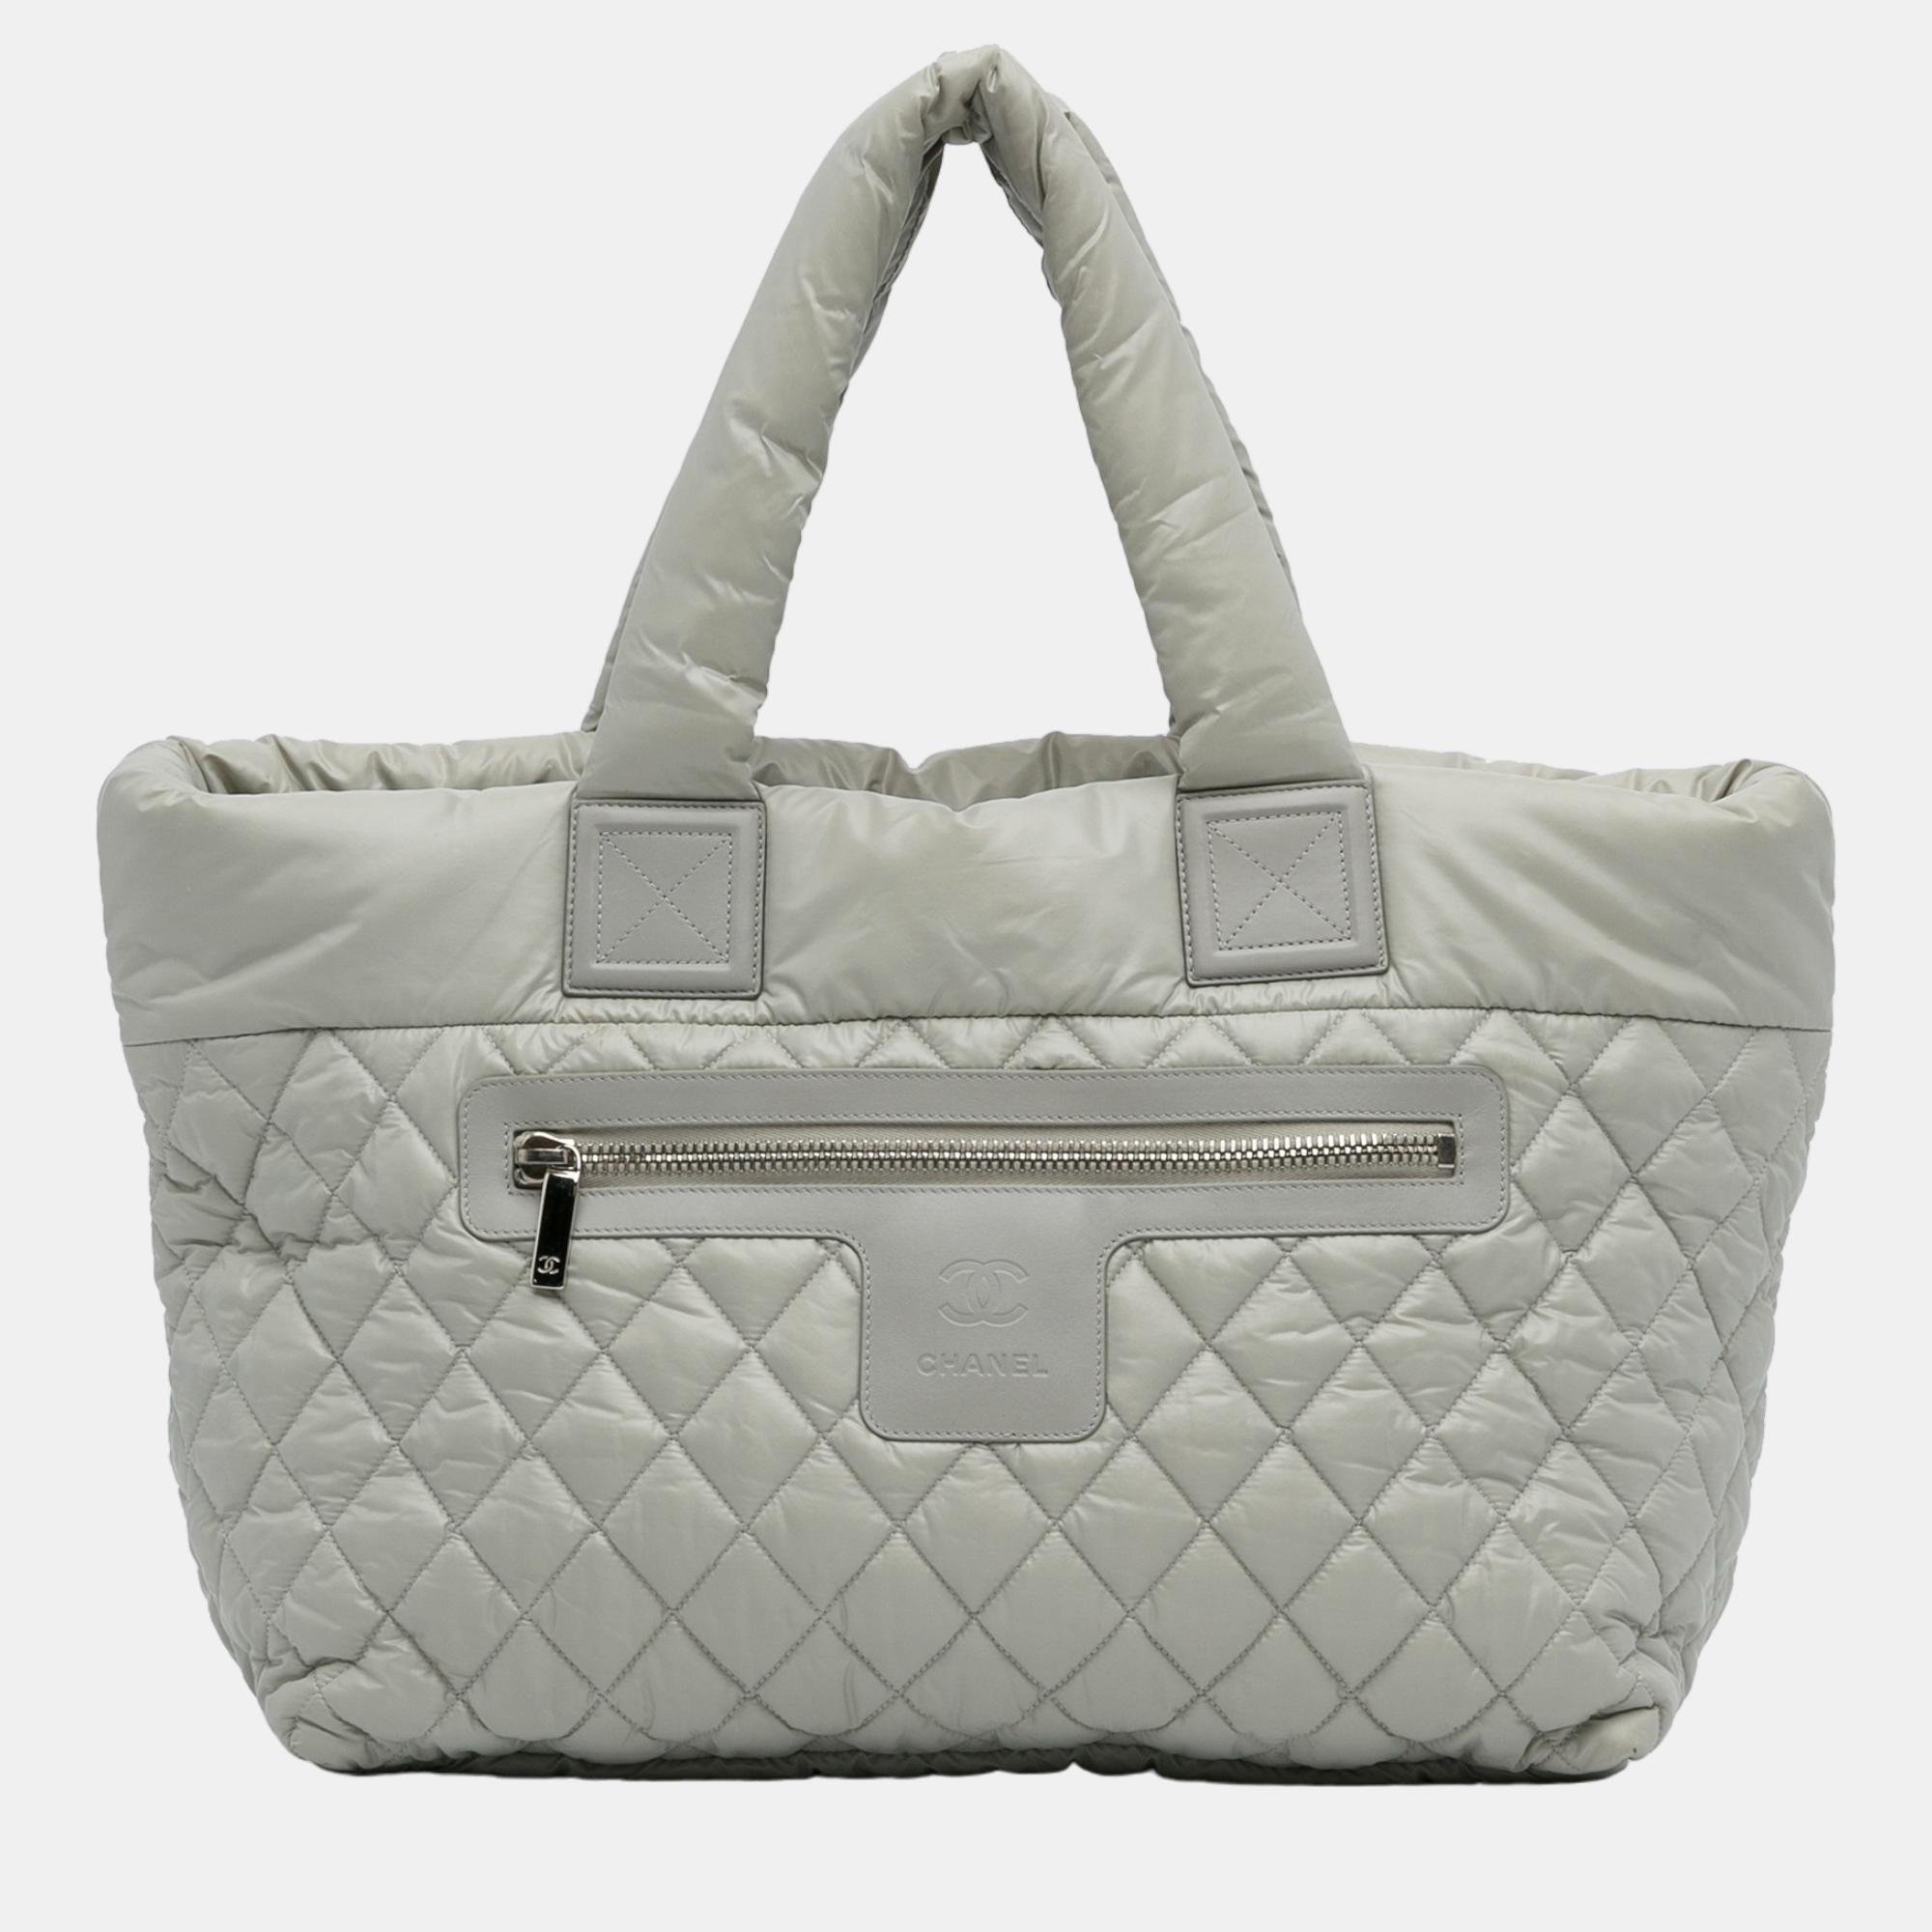 Chanel Grey Coco Cocoon Tote Bag